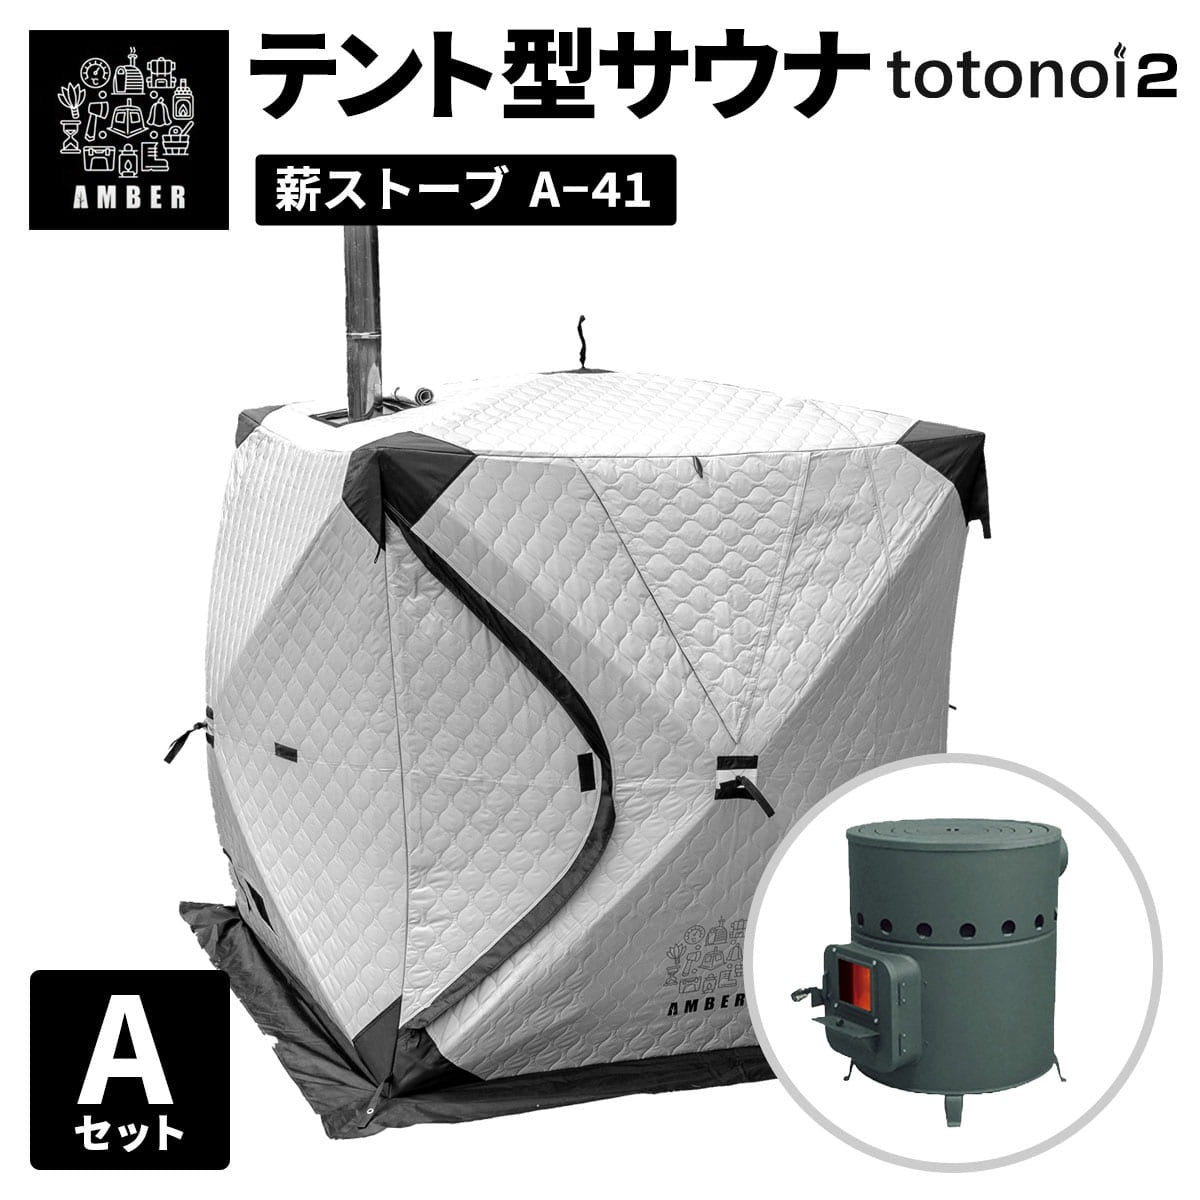 AMBER テント型サウナ totonoi2 (Aセット)